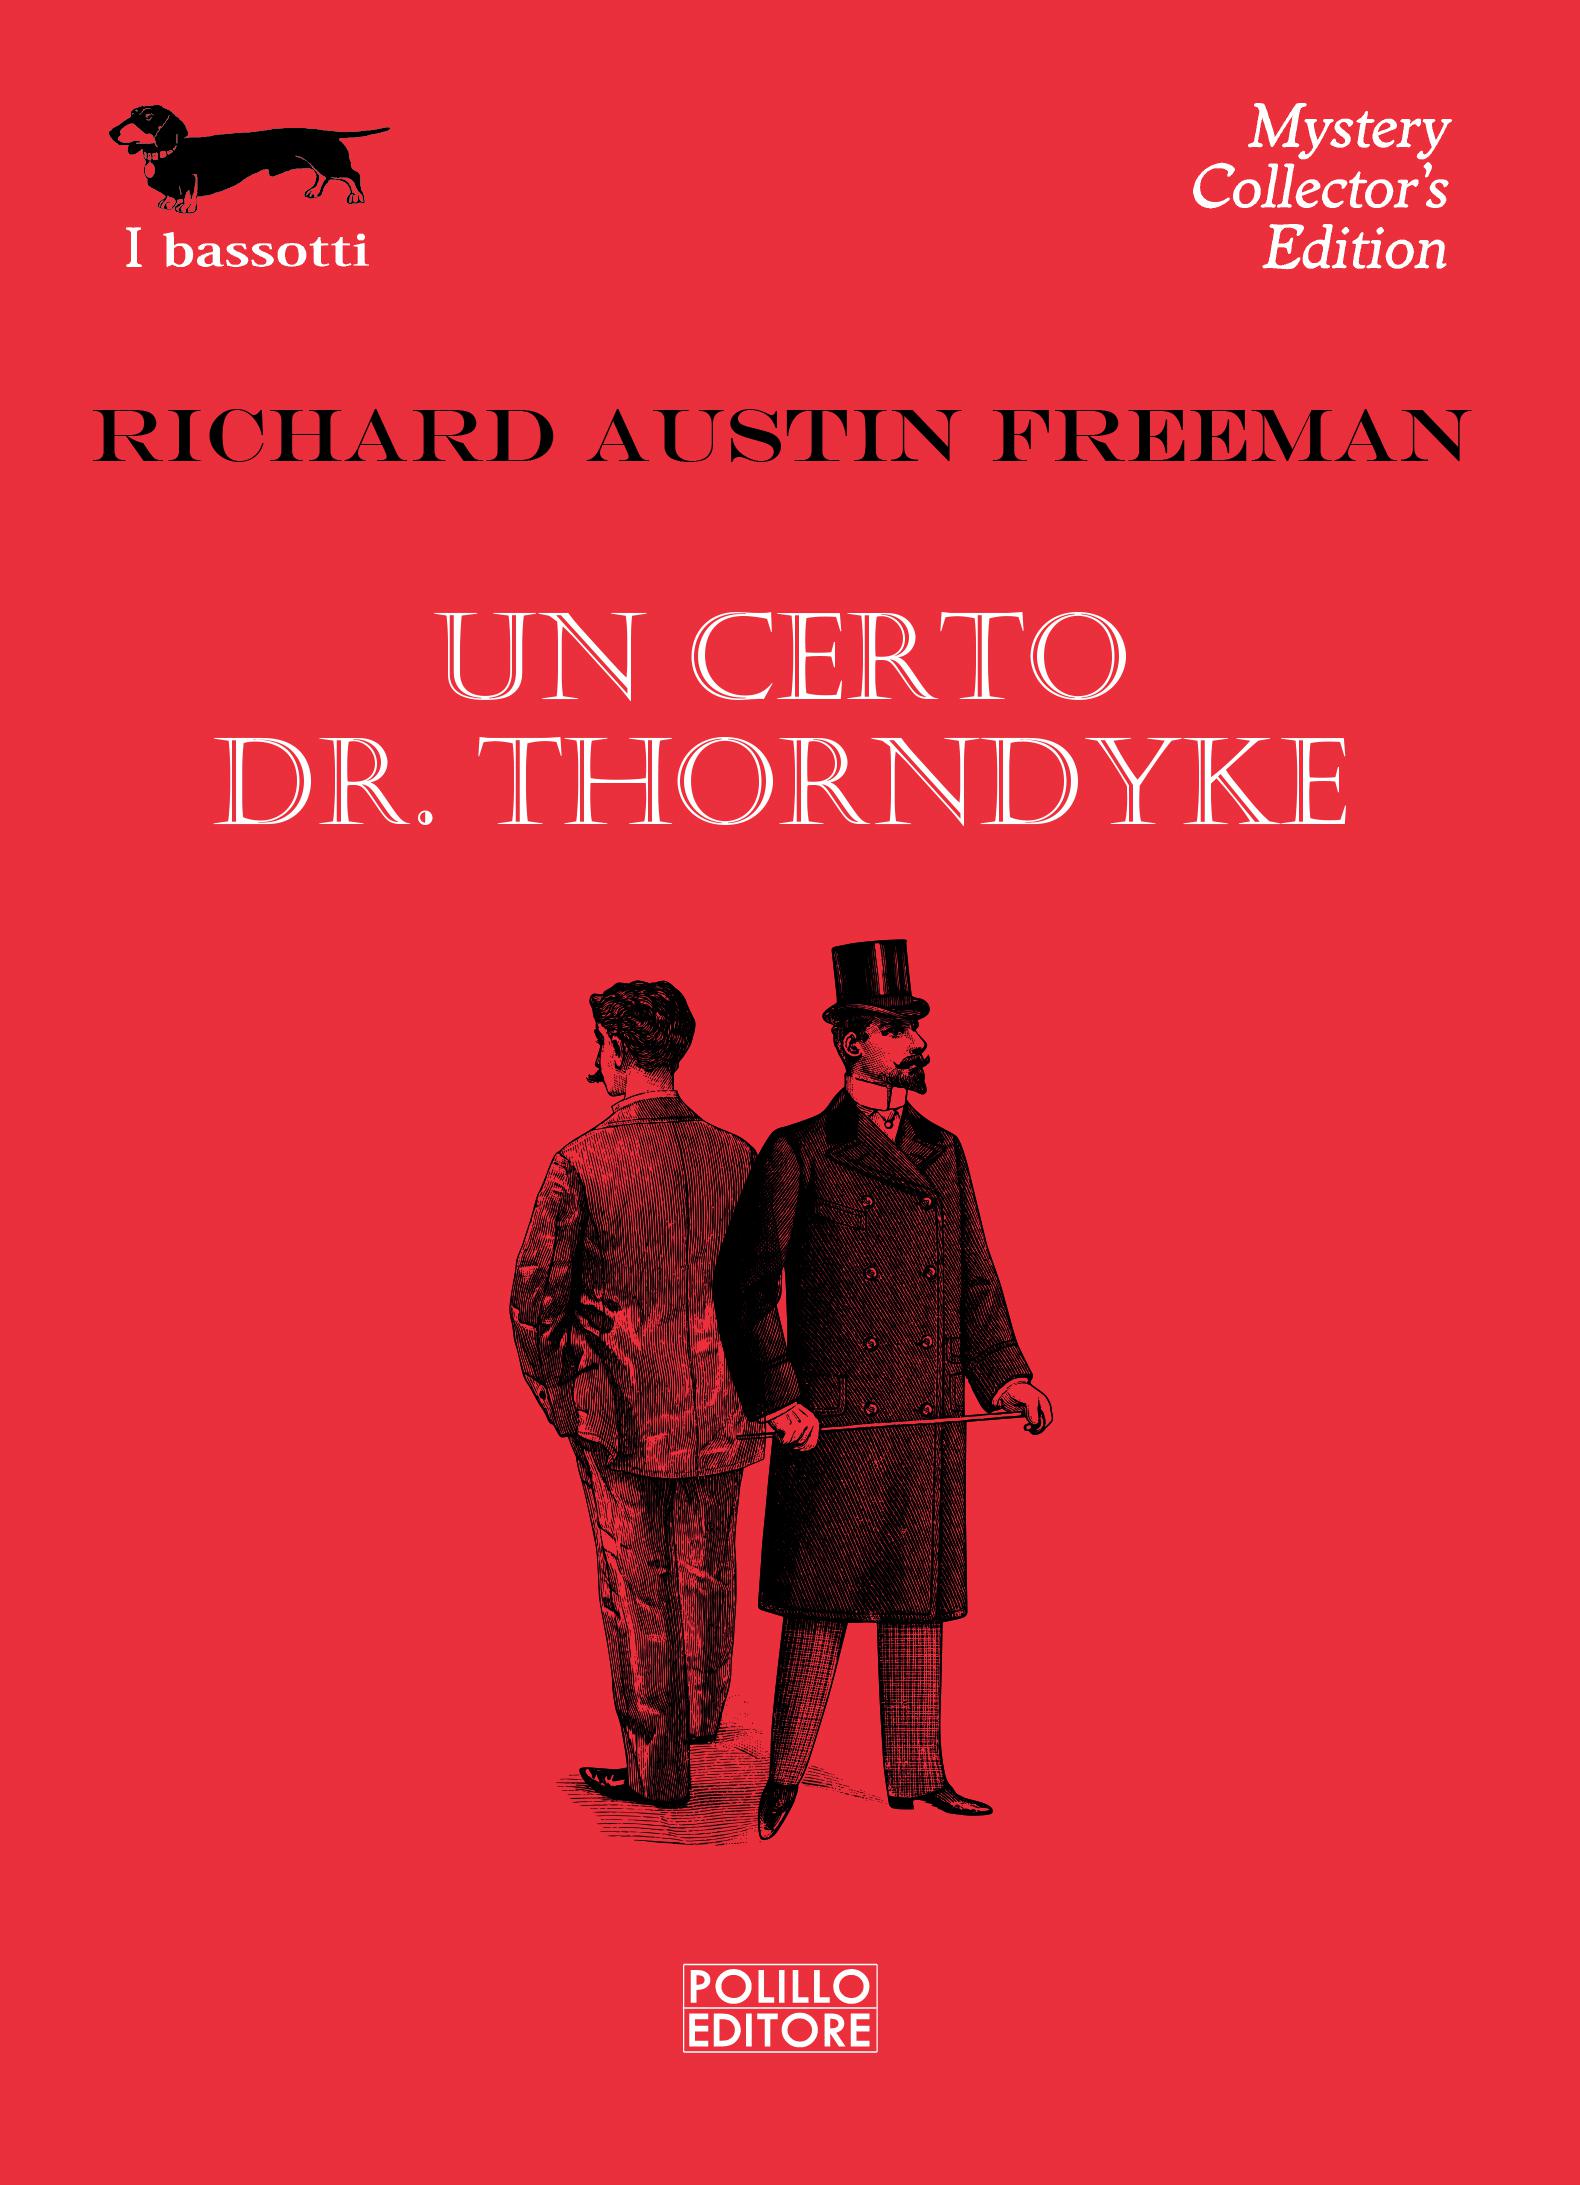 UN CERTO DR. THORNDYKE